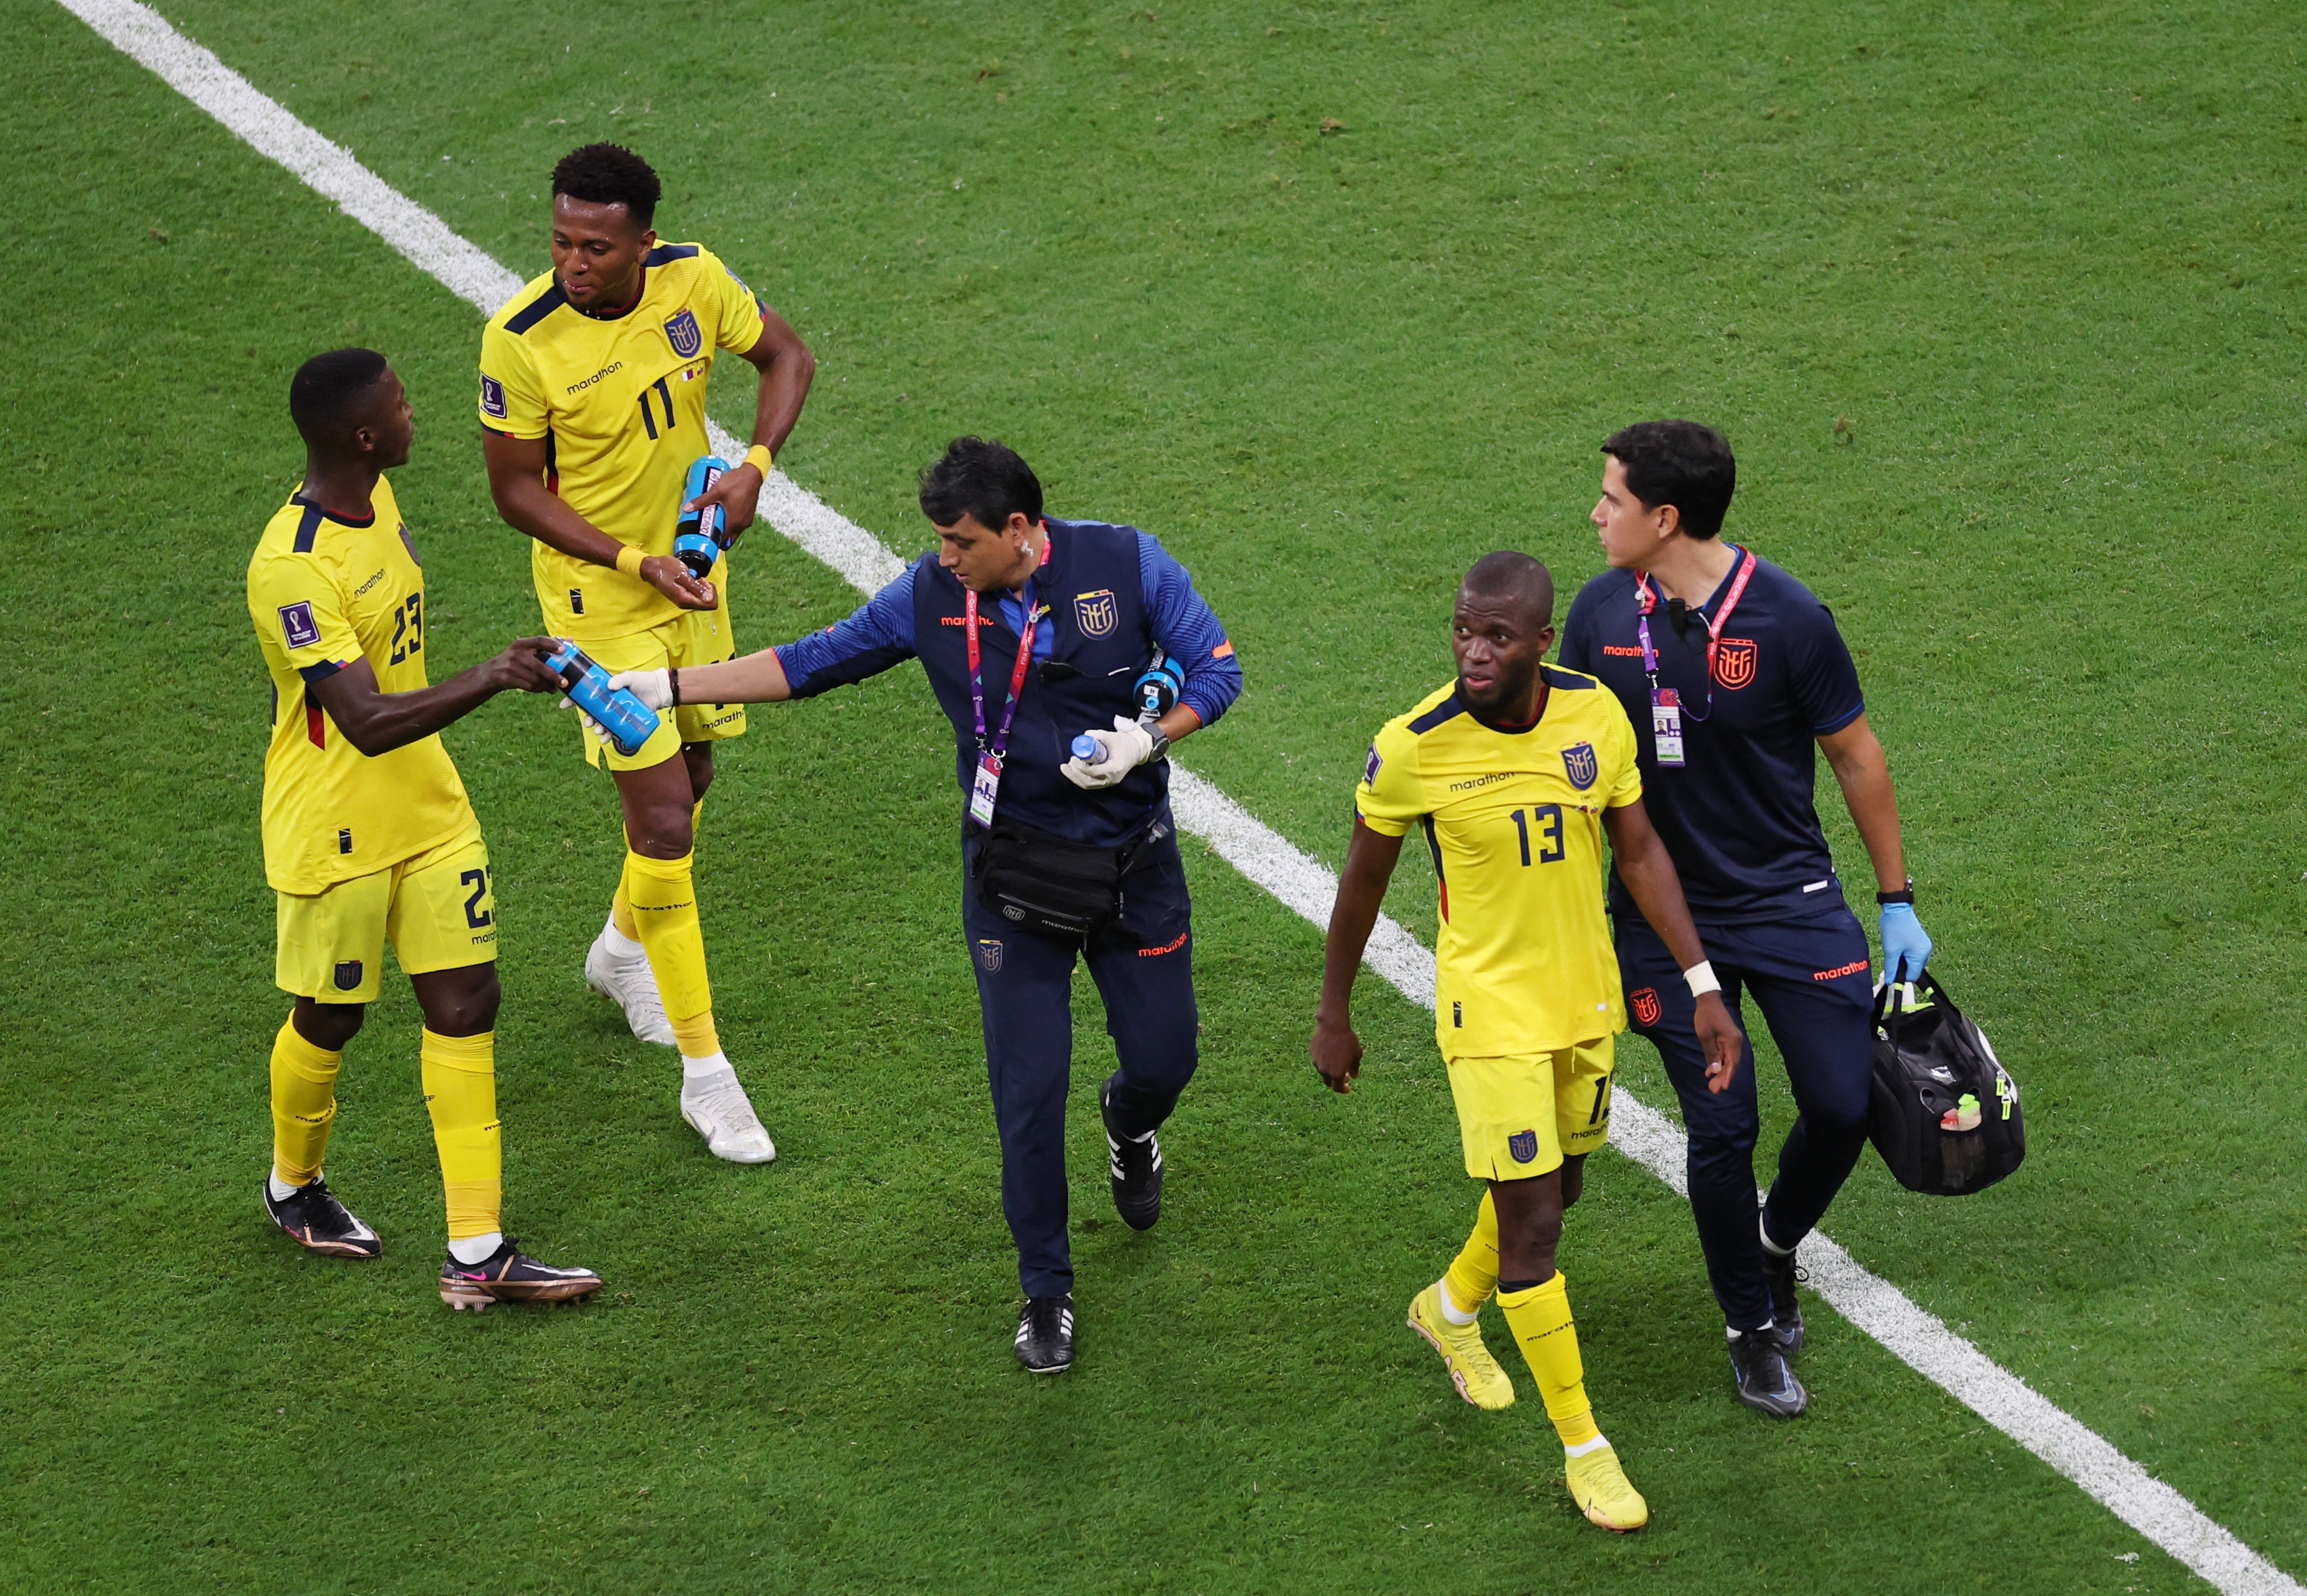 Ecuador terminó el partido con tranquilidad. Foto: REUTERS/Amr Abdallah Dalsh